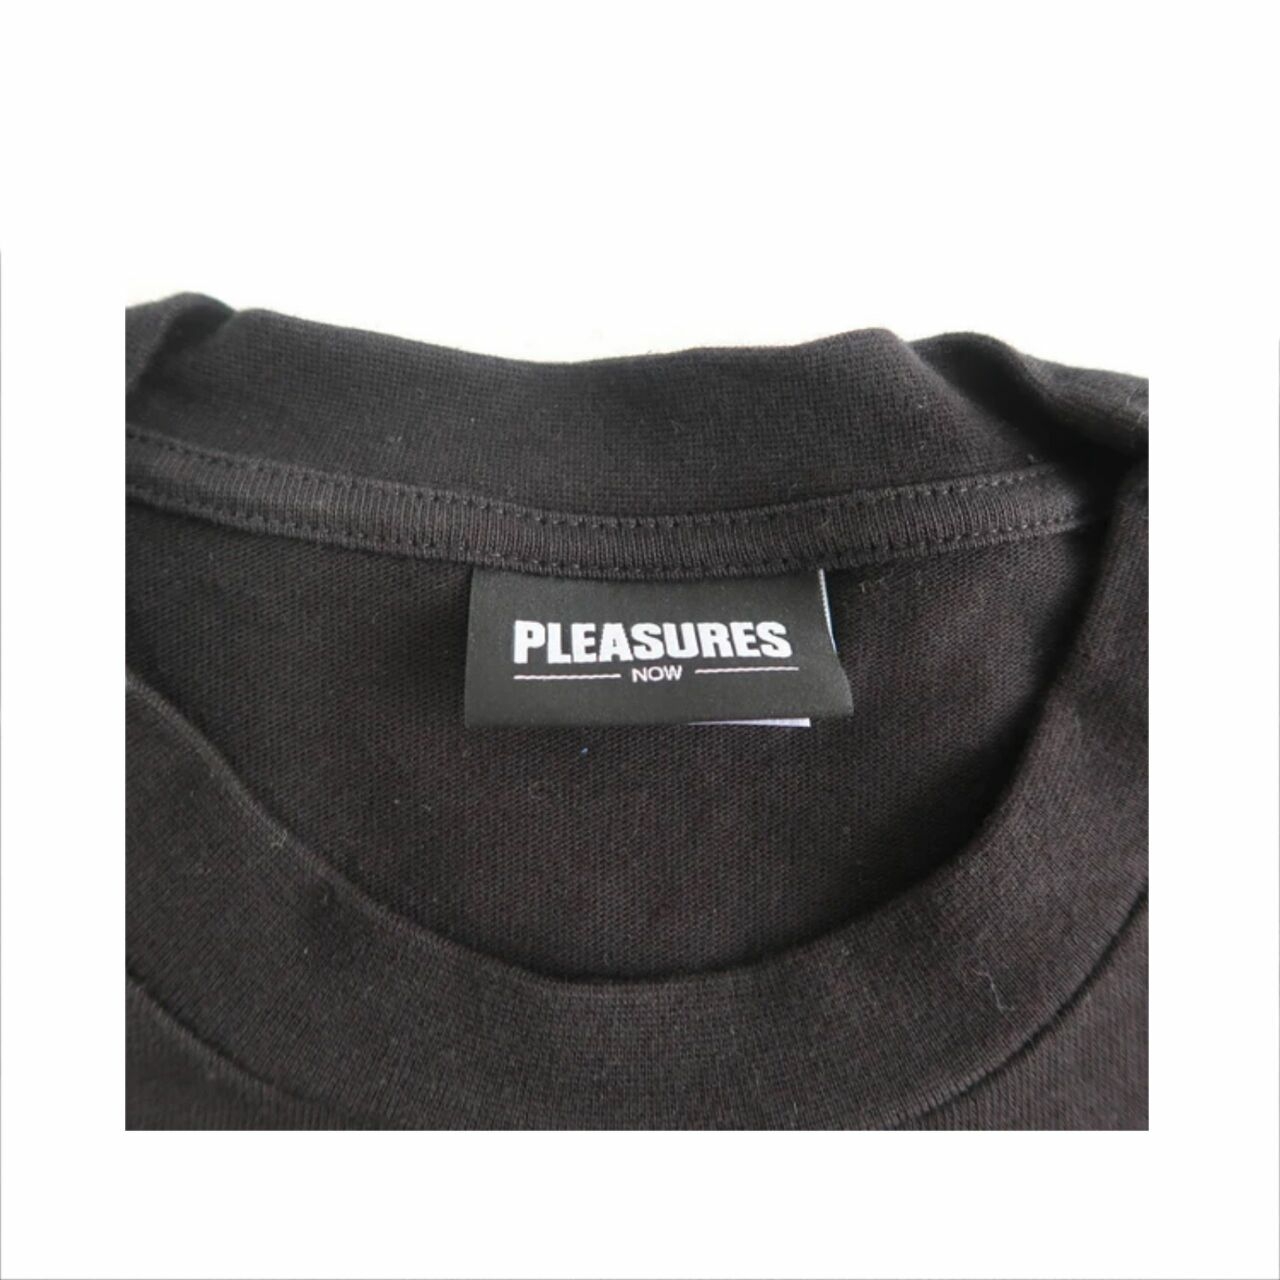 Pleasures Joy Division 2019 Music T-Shirt